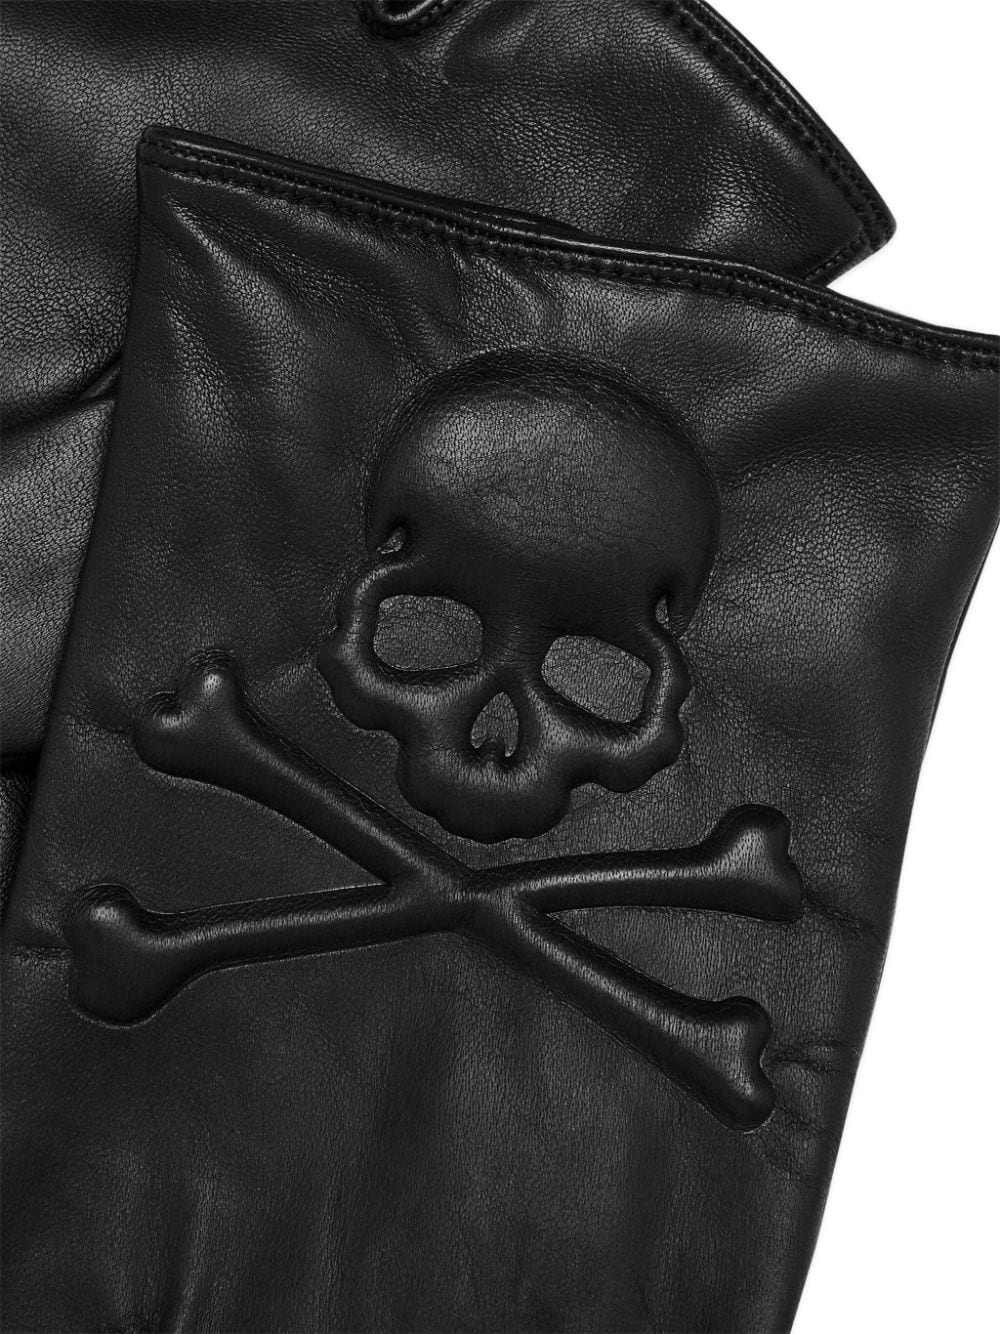 Skull&Bones leather gloves - 2